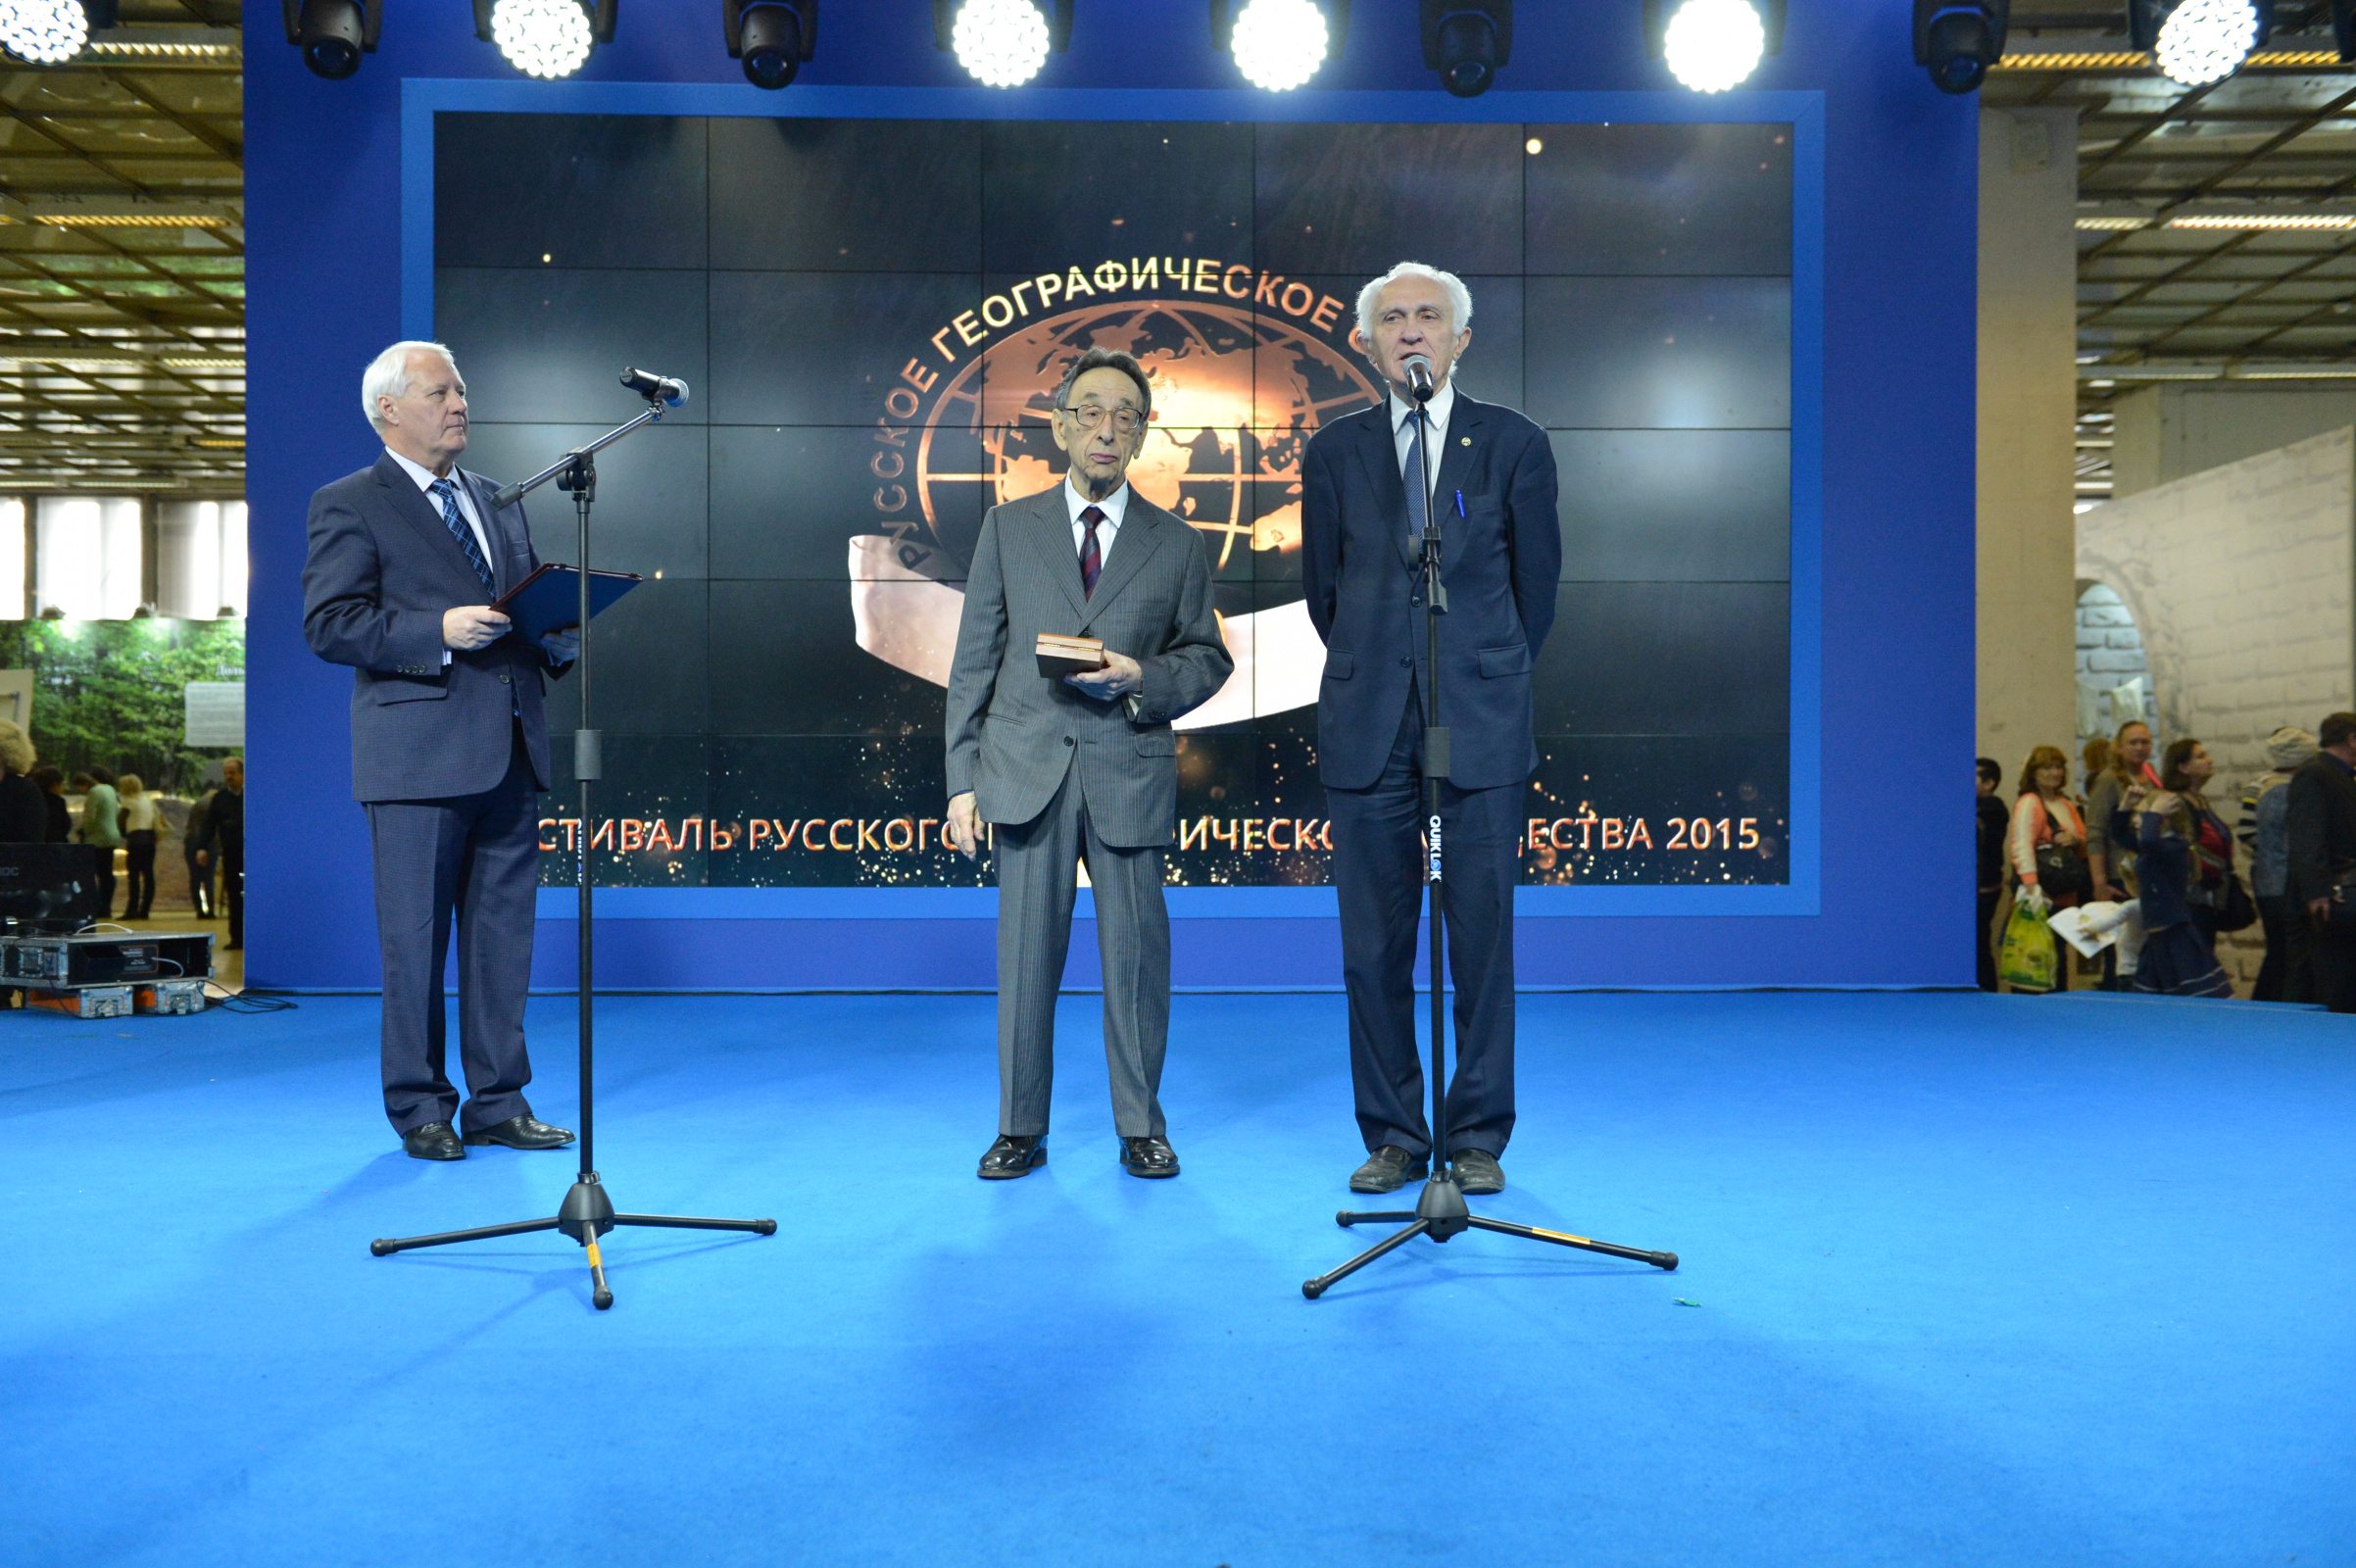 Слева направо: Первый Вице-президент РГО Н.С. Касимов, Д.Д. Тумаркин, Почётный Президент РГО В.М. Котляков